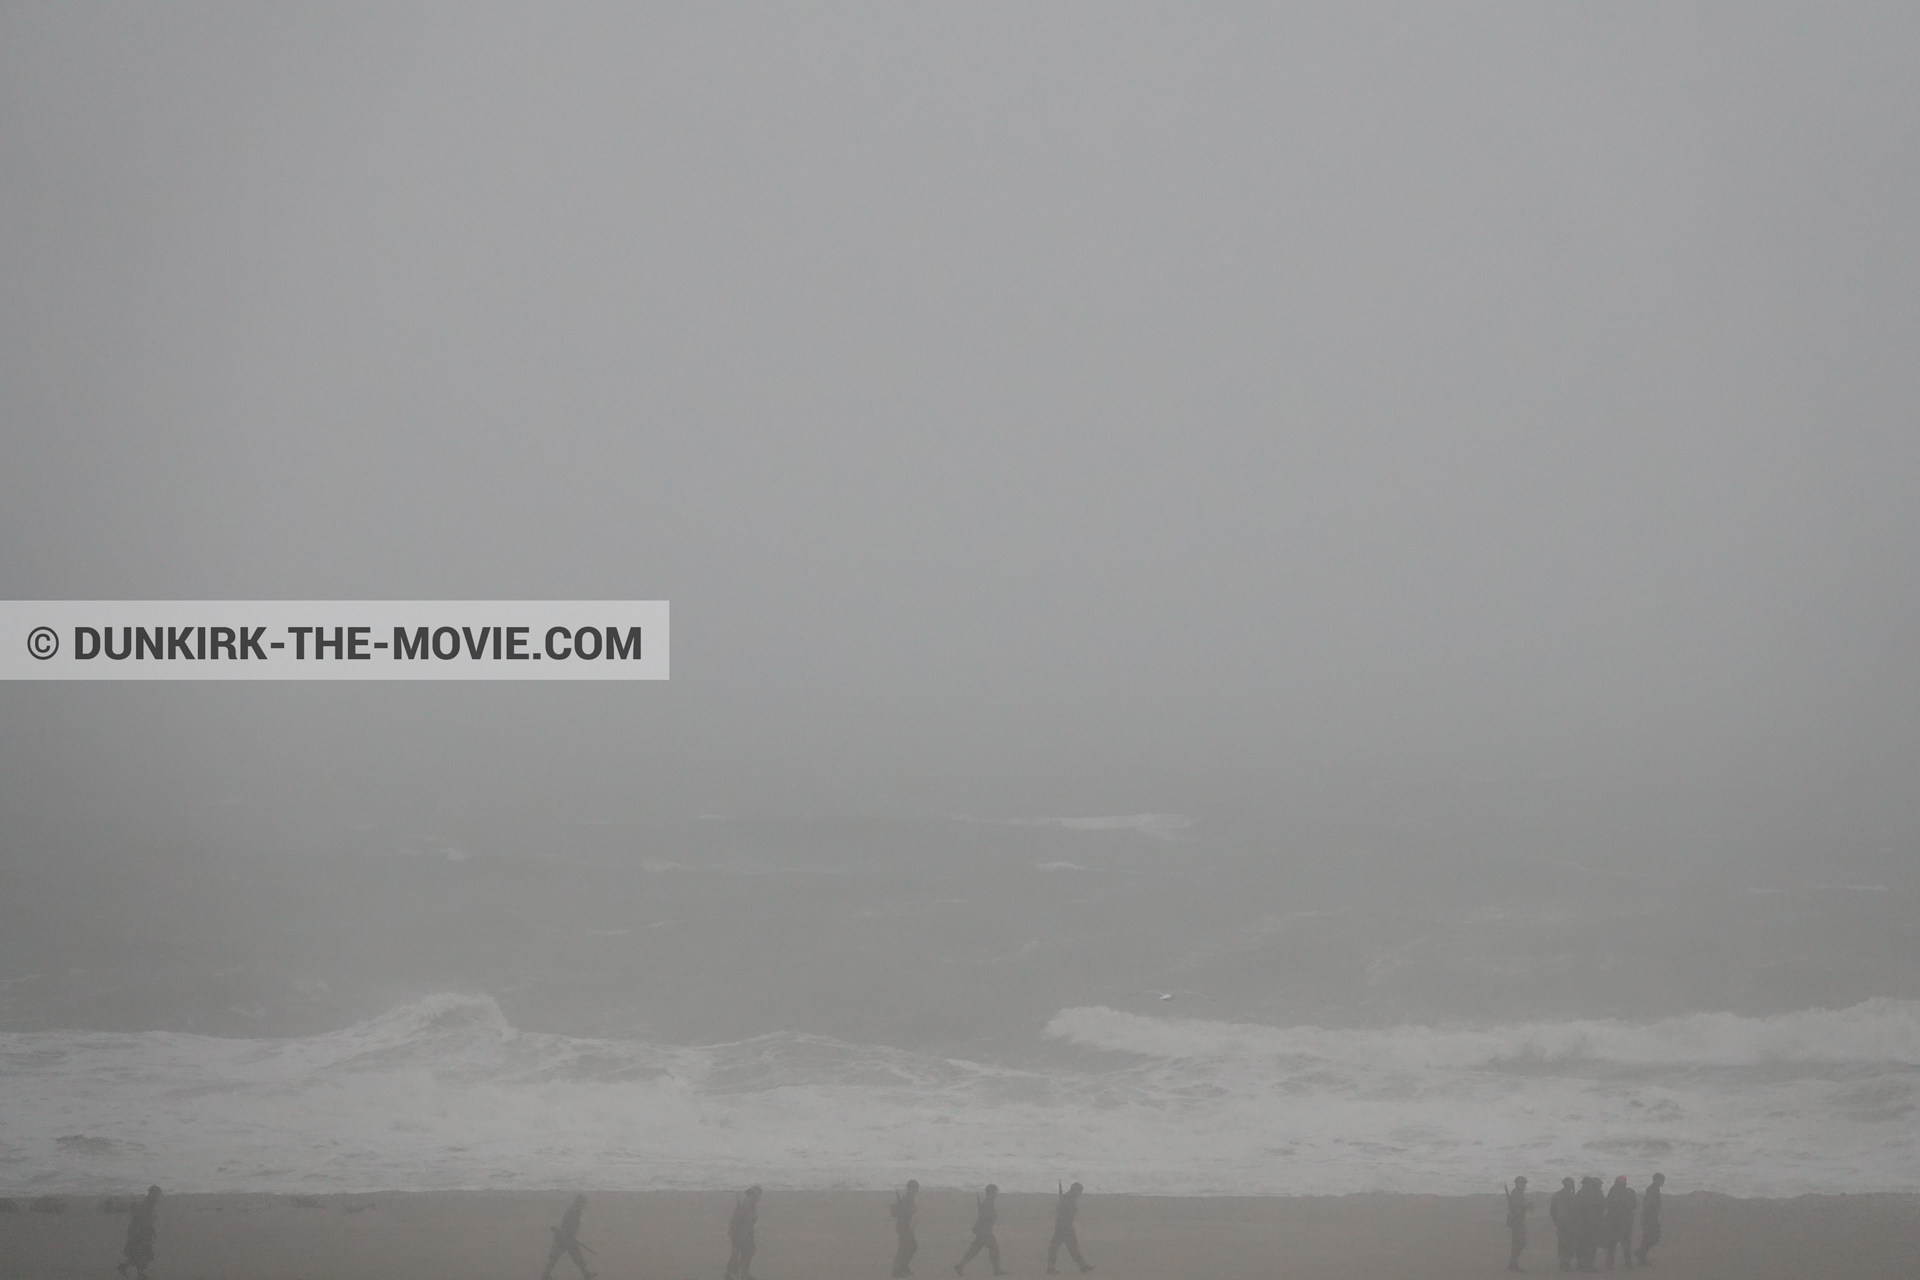 Fotos con cielo gris, extras, mares agitados, playa,  durante el rodaje de la película Dunkerque de Nolan